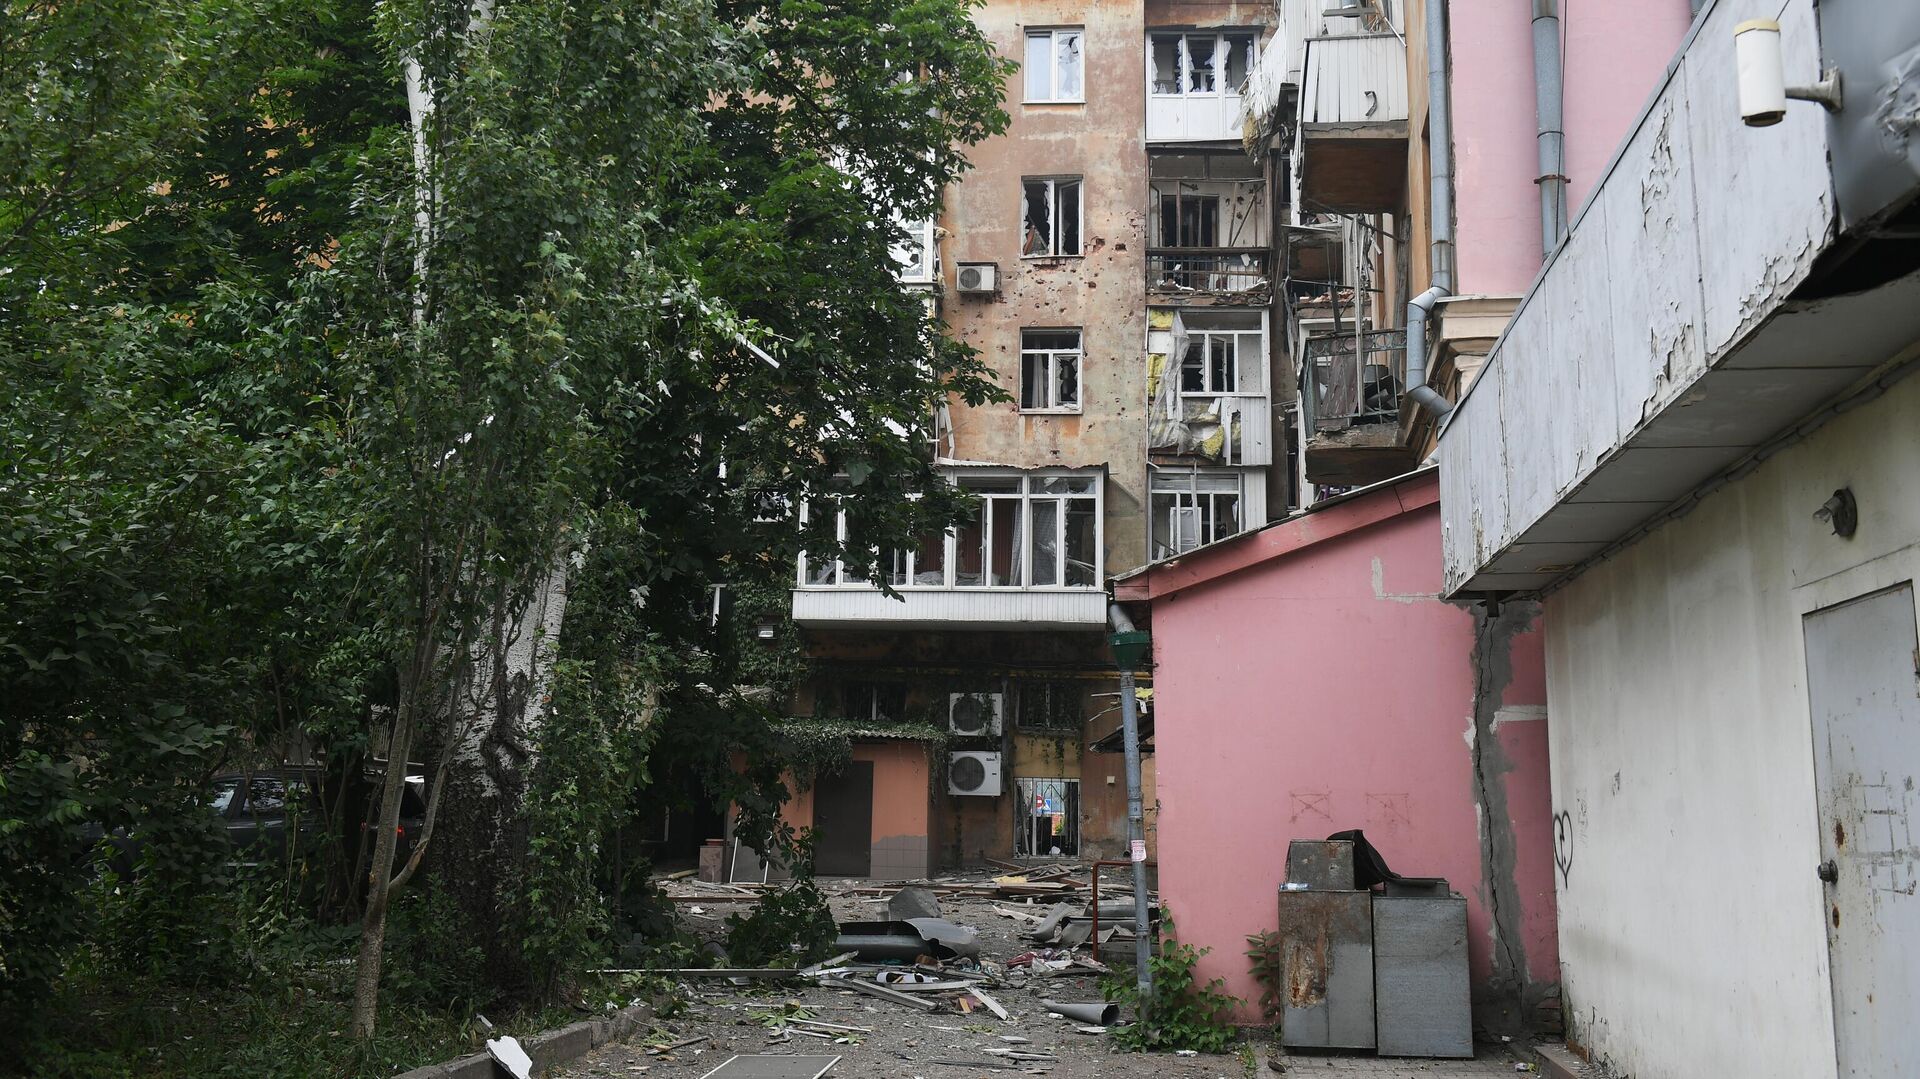 Жилой дом на Университетской улице в Ворошиловском районе Донецка, подвергшийся обстрелу - РИА Новости, 1920, 20.06.2022